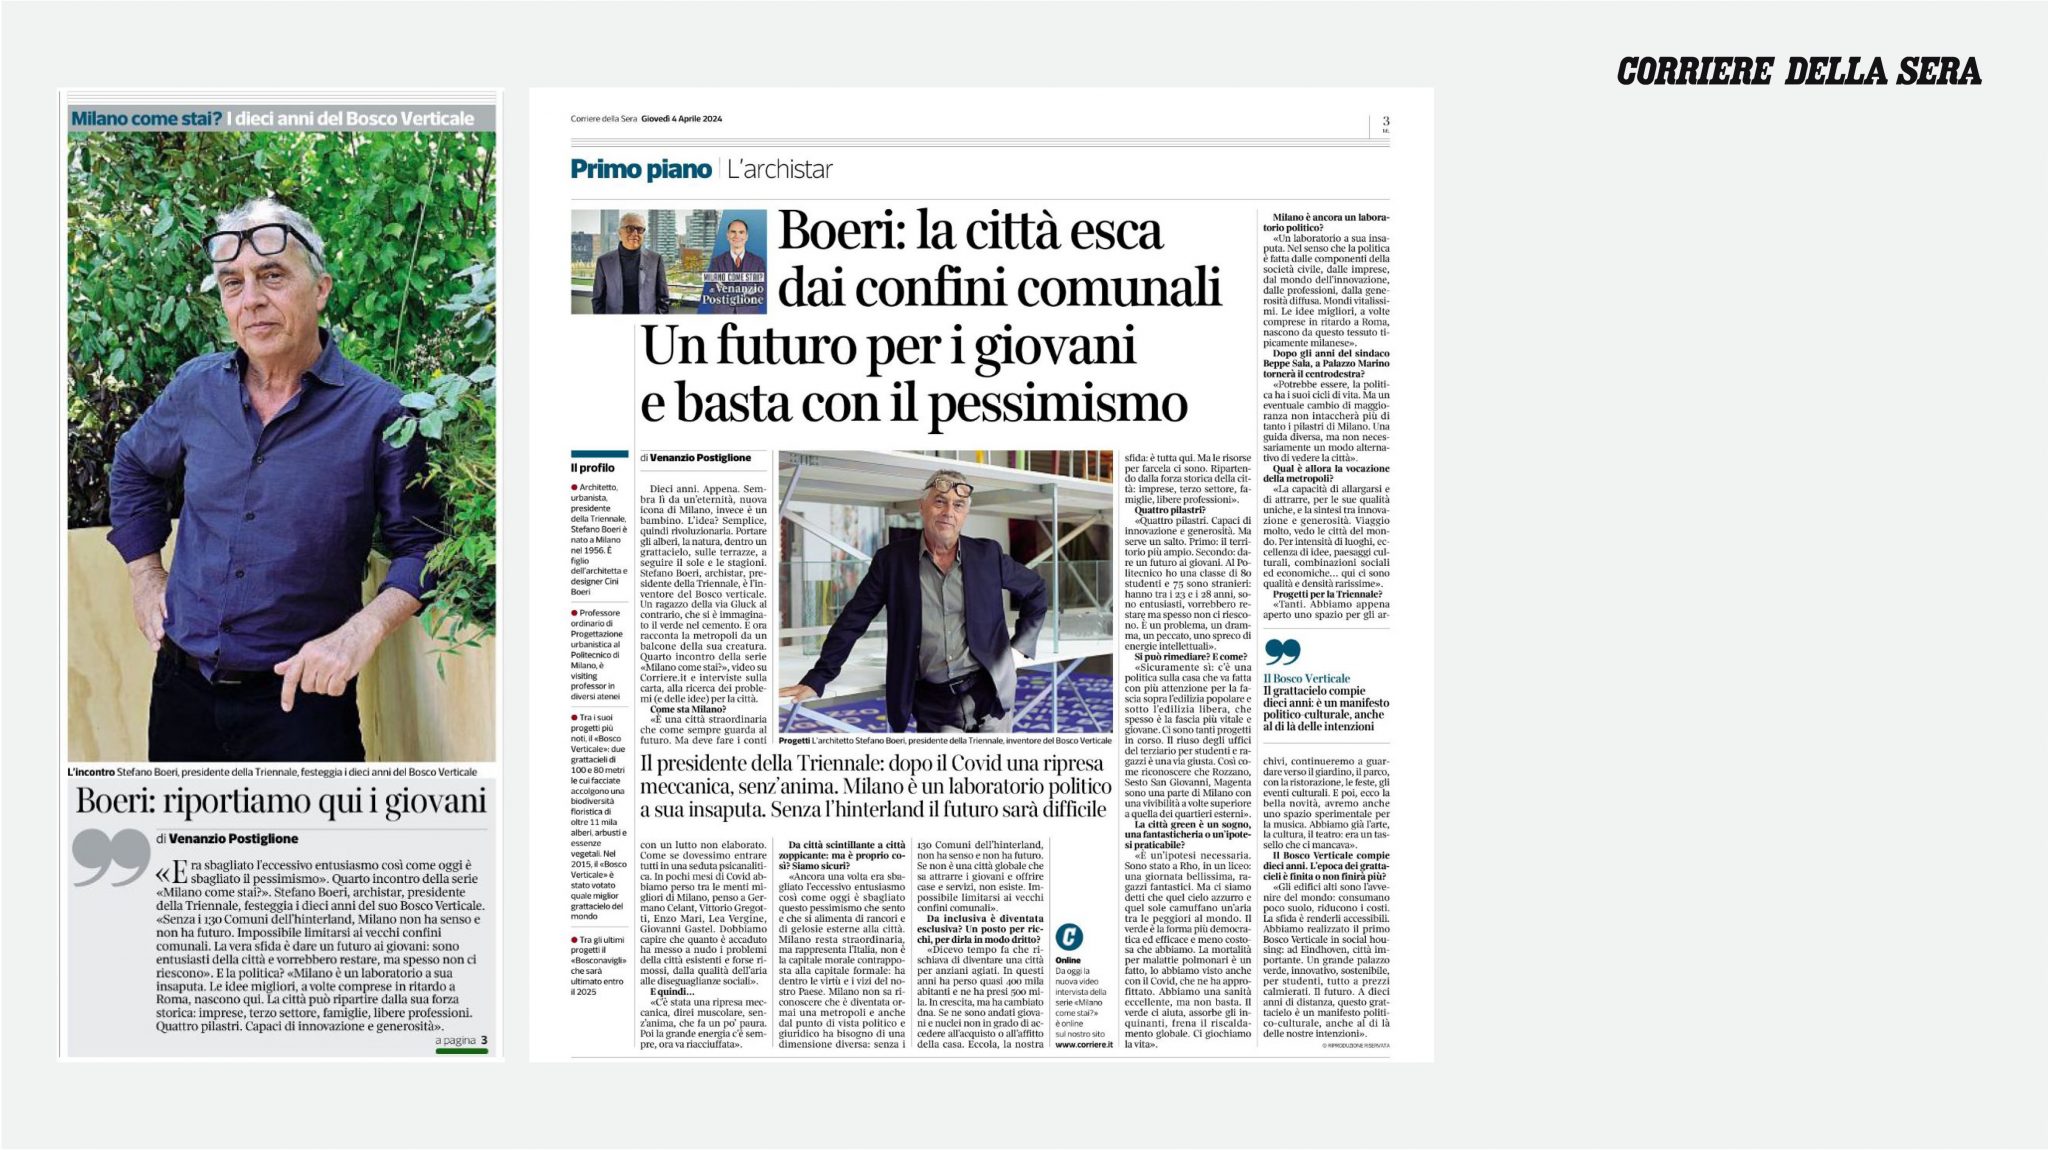 Stefano Boeri intervistato su Il Corriere della Sera